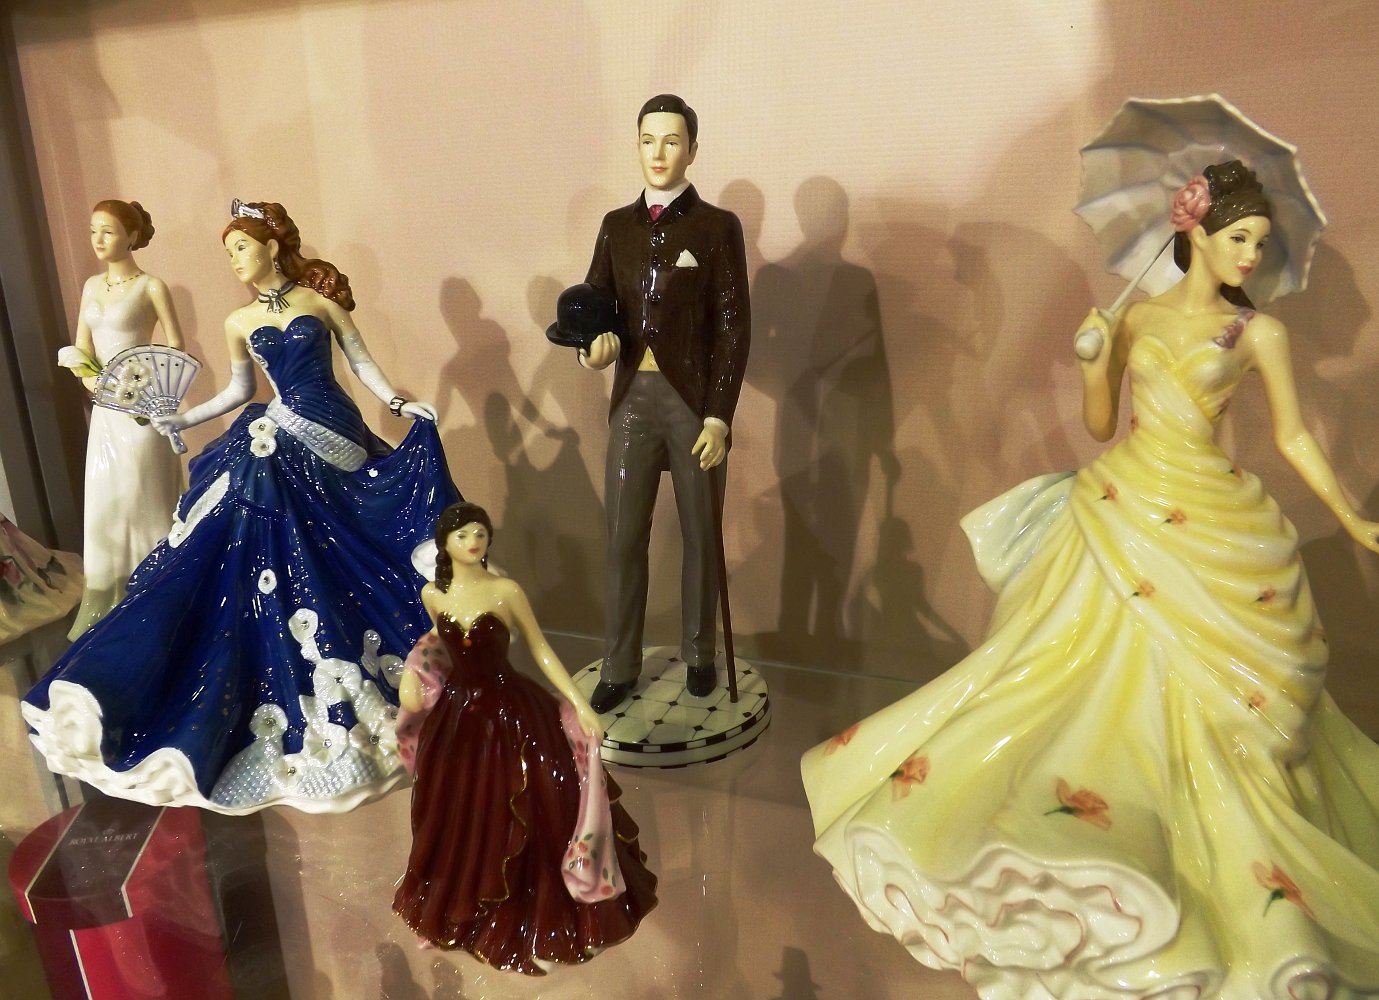 Фарфоровые статуэтки от English Ladies. Выставка HouseHold Expo в Москве, сентябрь 2013 г.